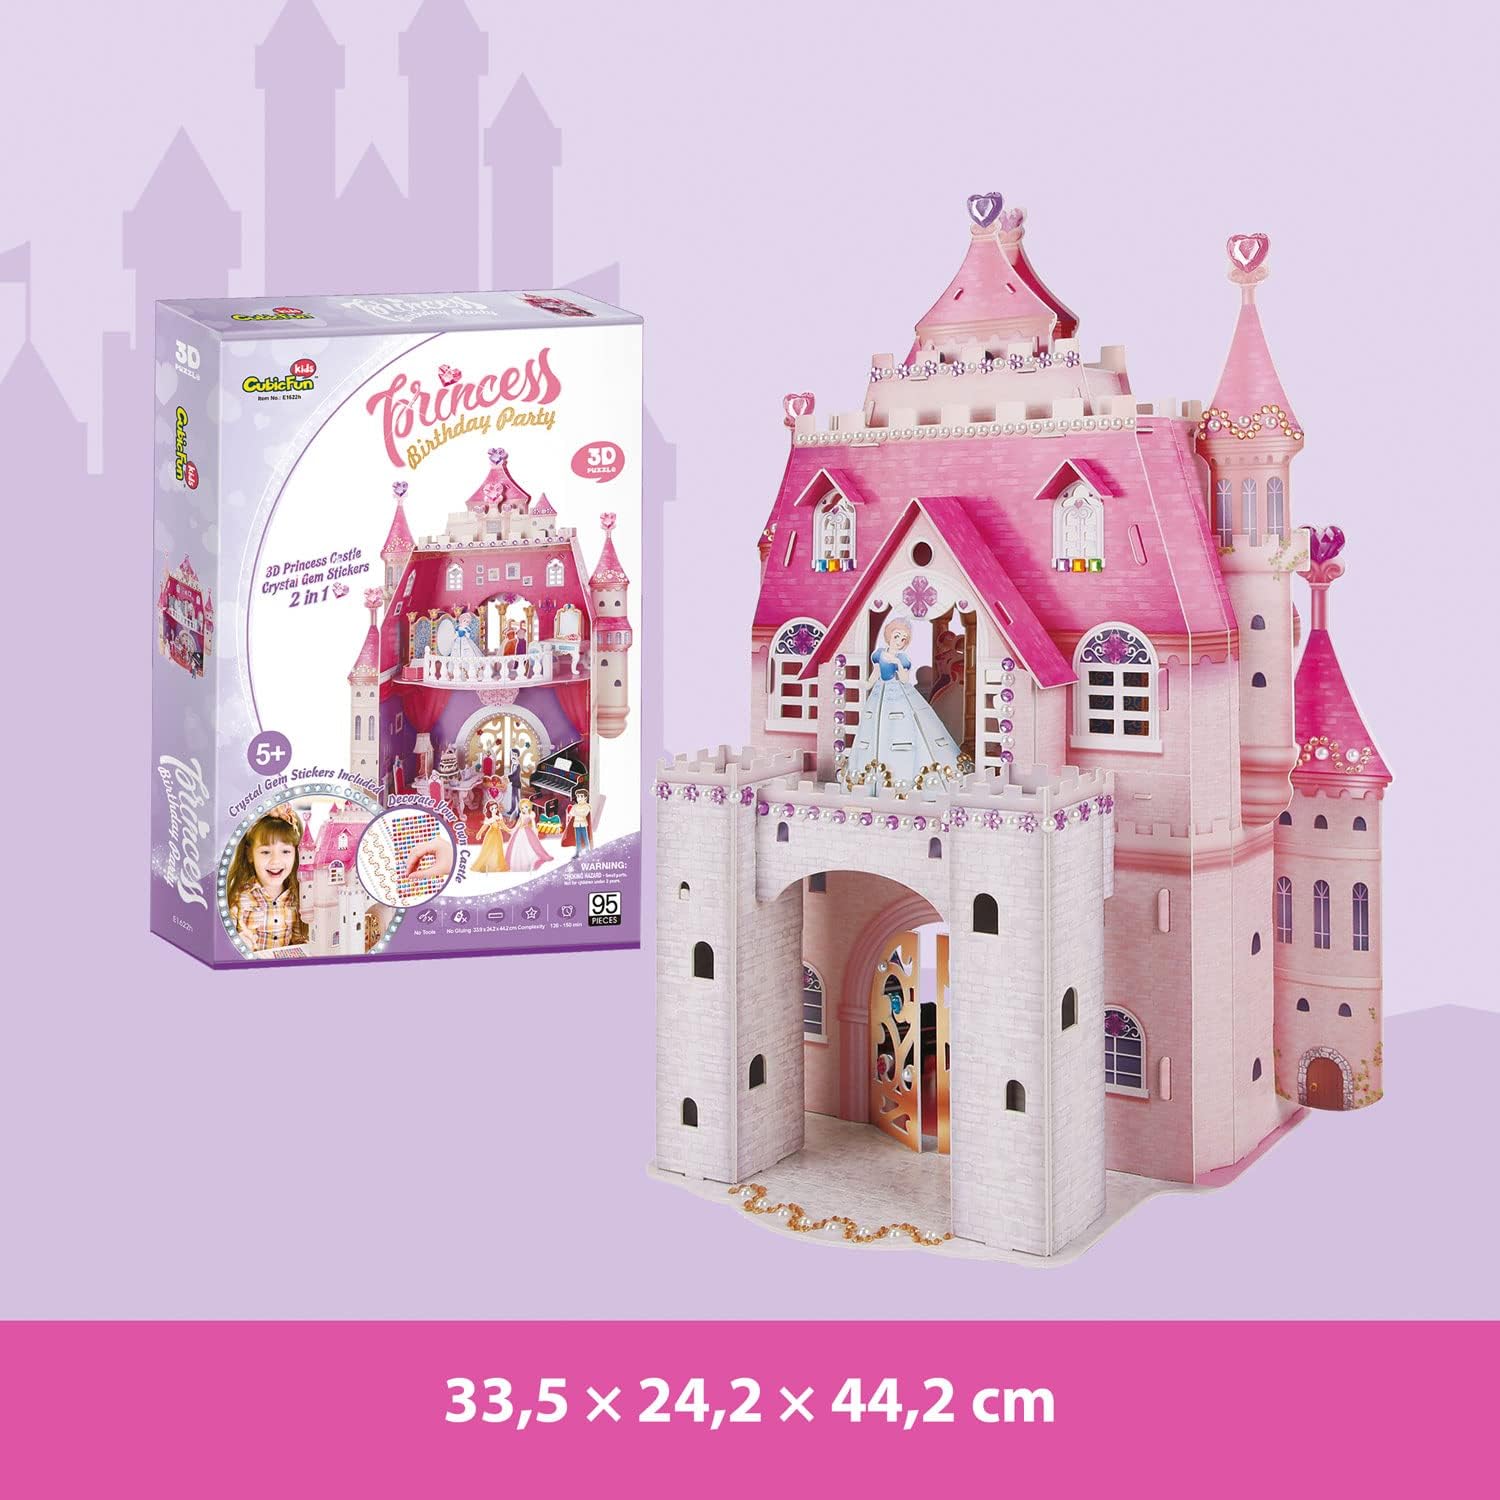 3D Puzzle Children - Princess Birthday Party , Princess Castle 95 Pieces